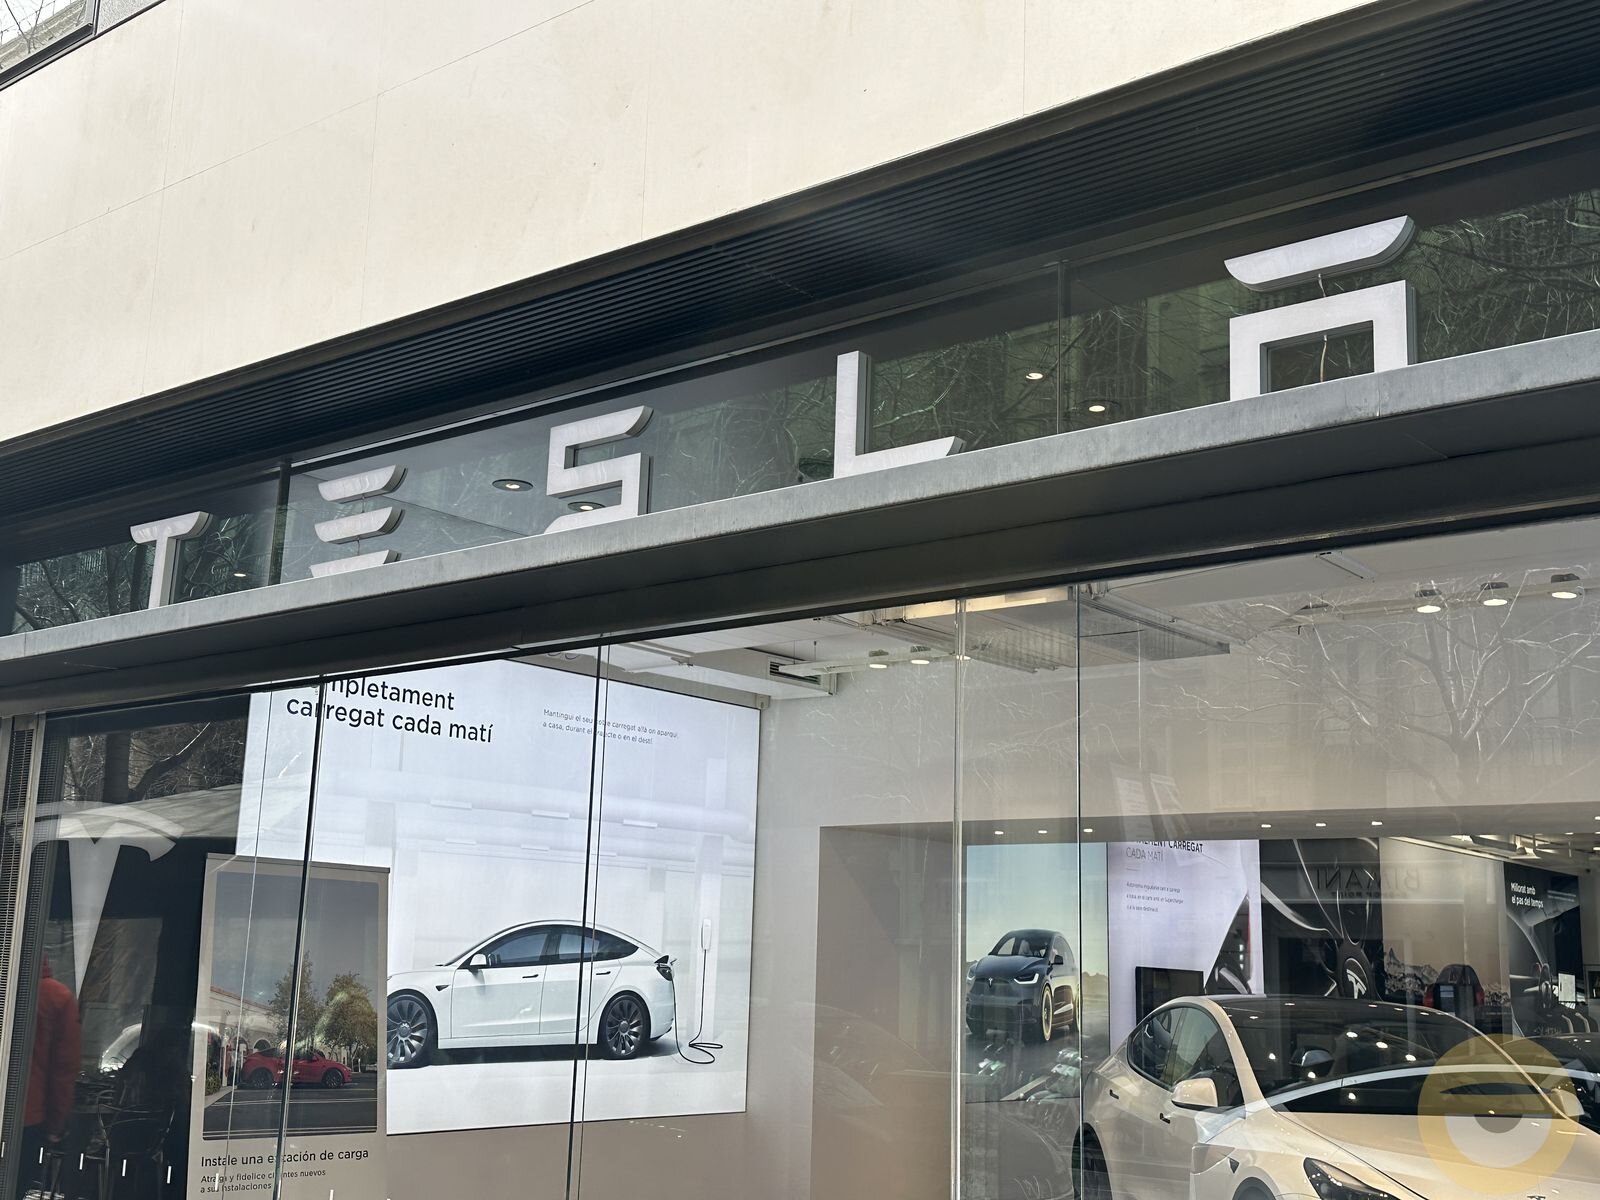 Ρεκόρ παραδόσεων για την Tesla με τη βοήθεια και των μειώσεων τιμών